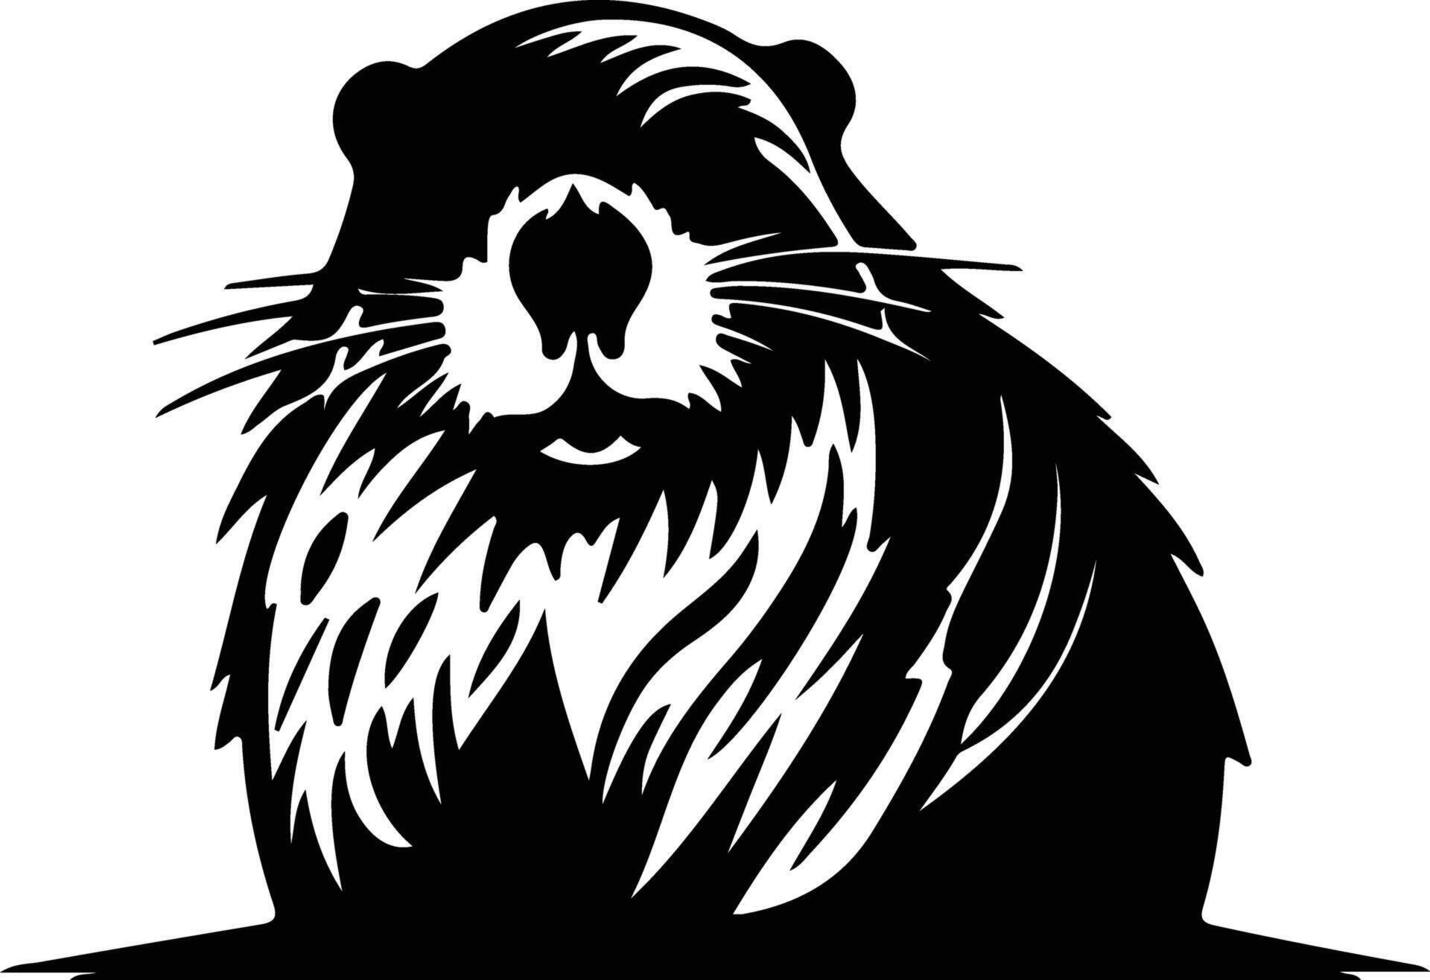 beaver black silhouette vector